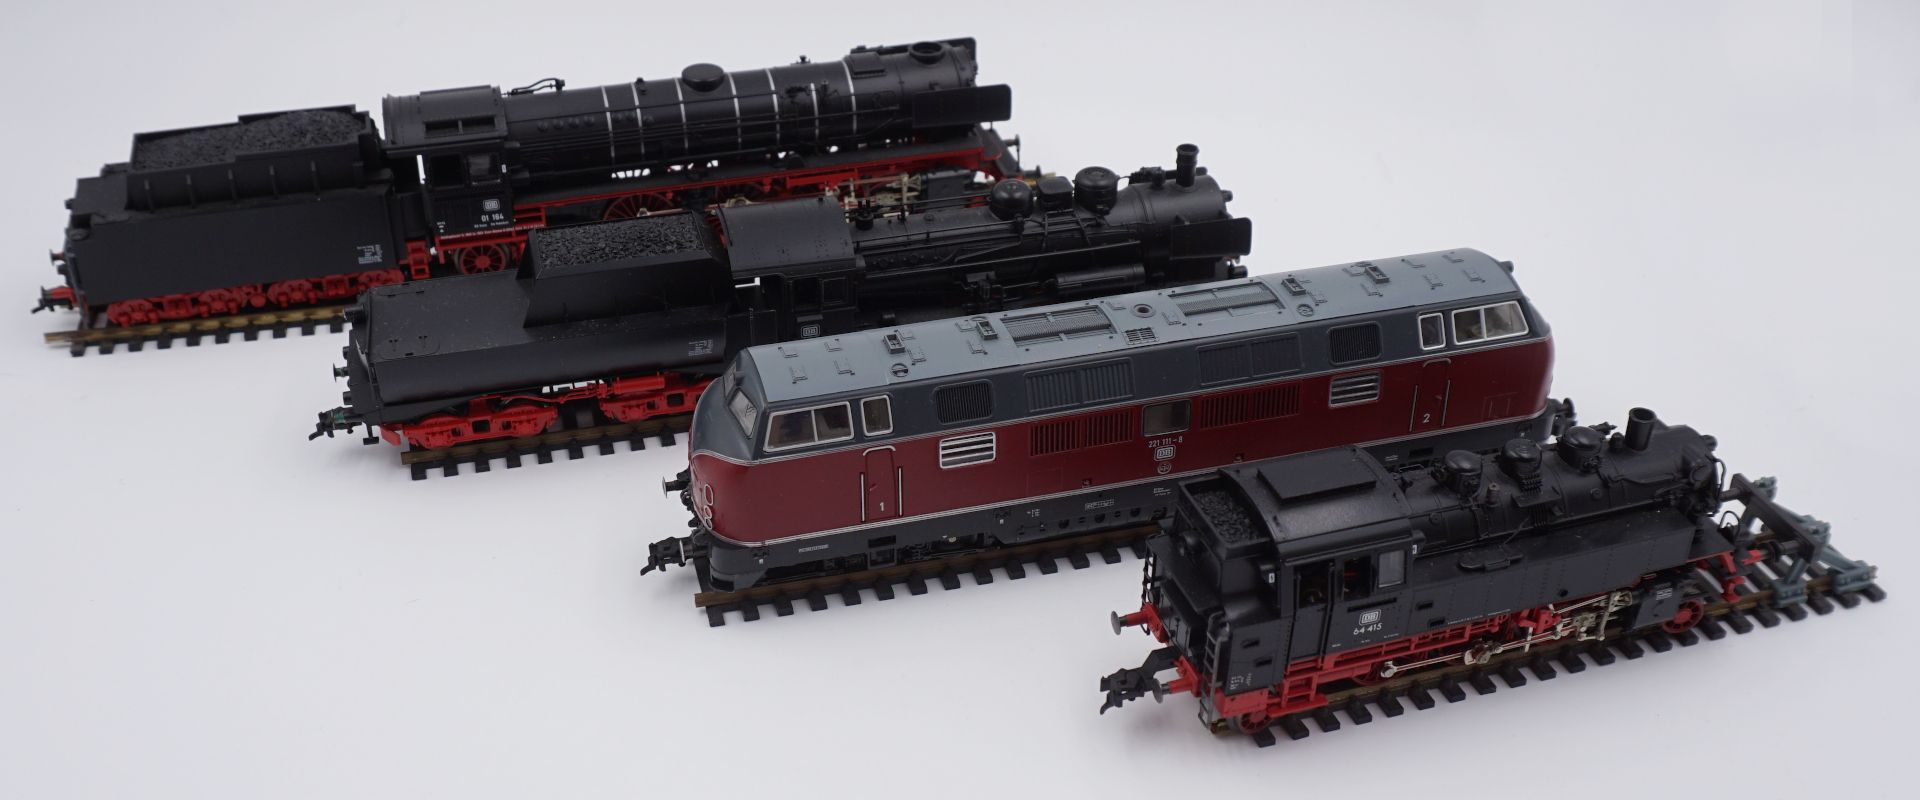 4 Spielzeuglokomotiven FLEISCHMANN versch. Modelle, min. Schienen, je Asp.